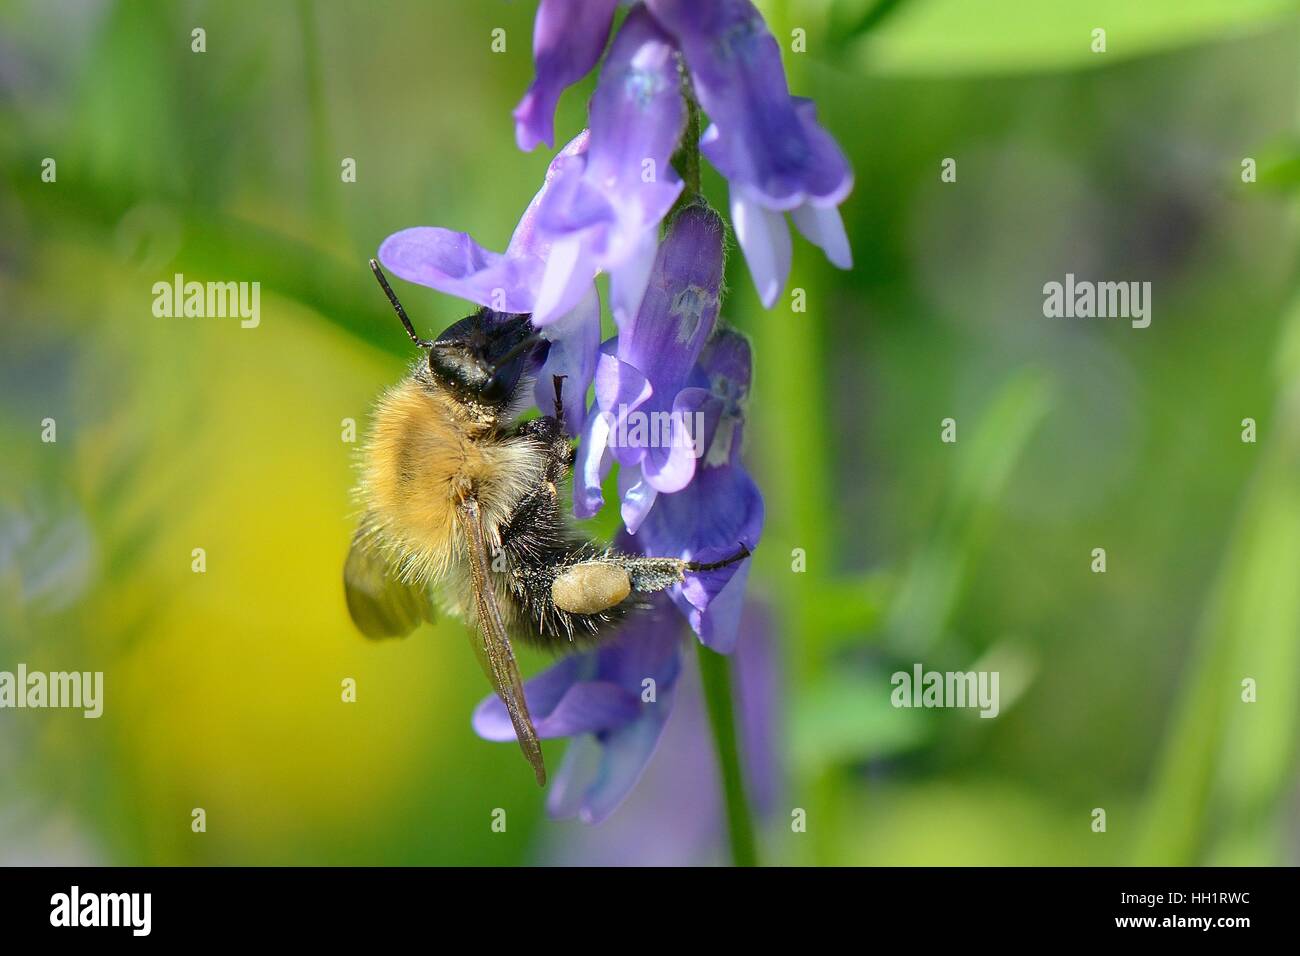 Carda comune bumblebee (Bombus pascuorum) nectaring su Tufted veccia (Vicia cracca) fiori, Bristol, Regno Unito Foto Stock